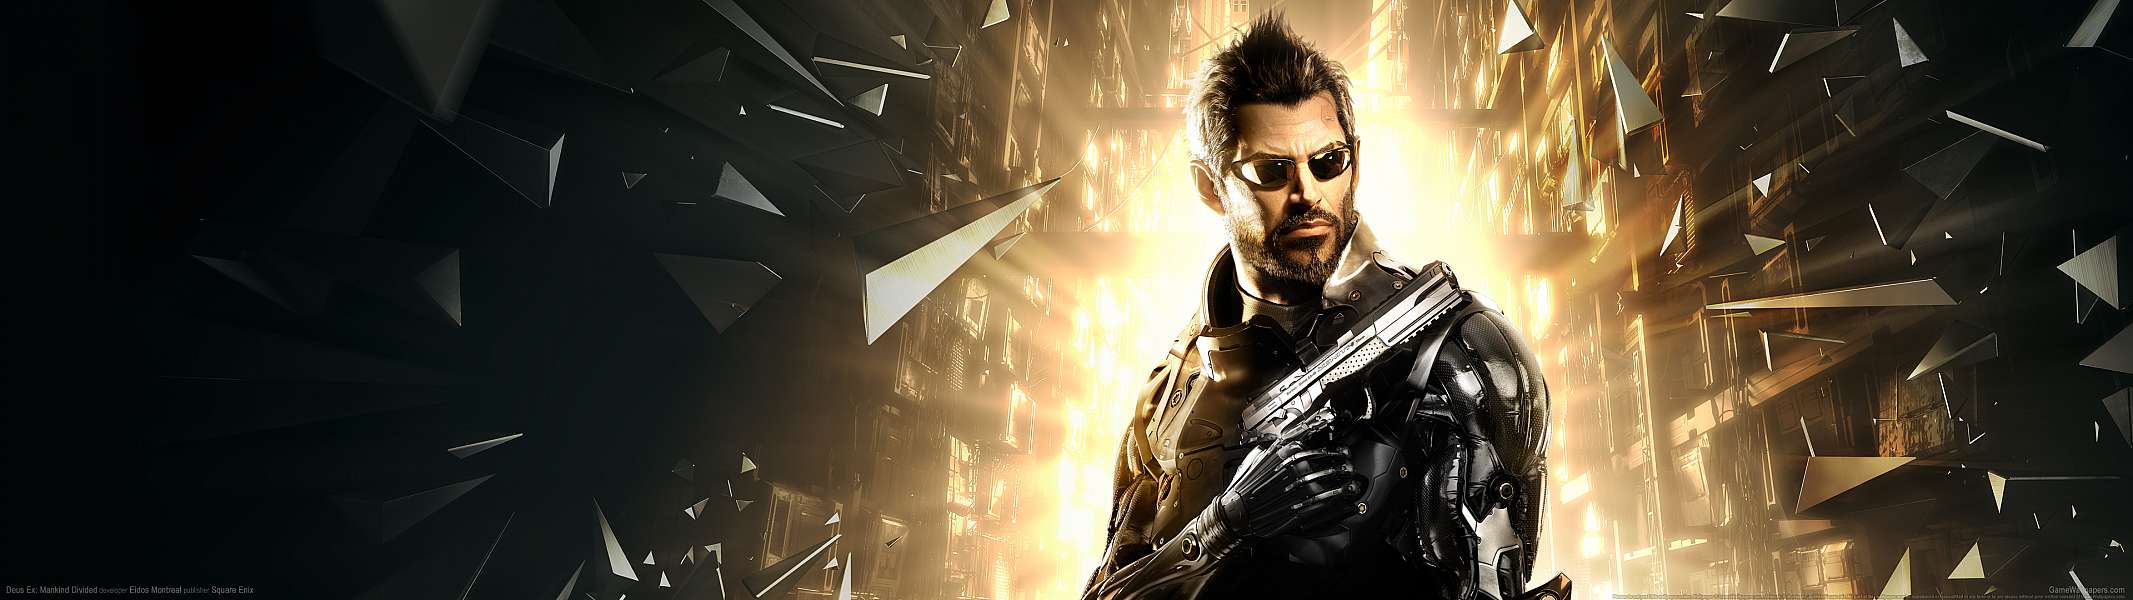 Deus Ex: Mankind Divided dual screen fond d'cran